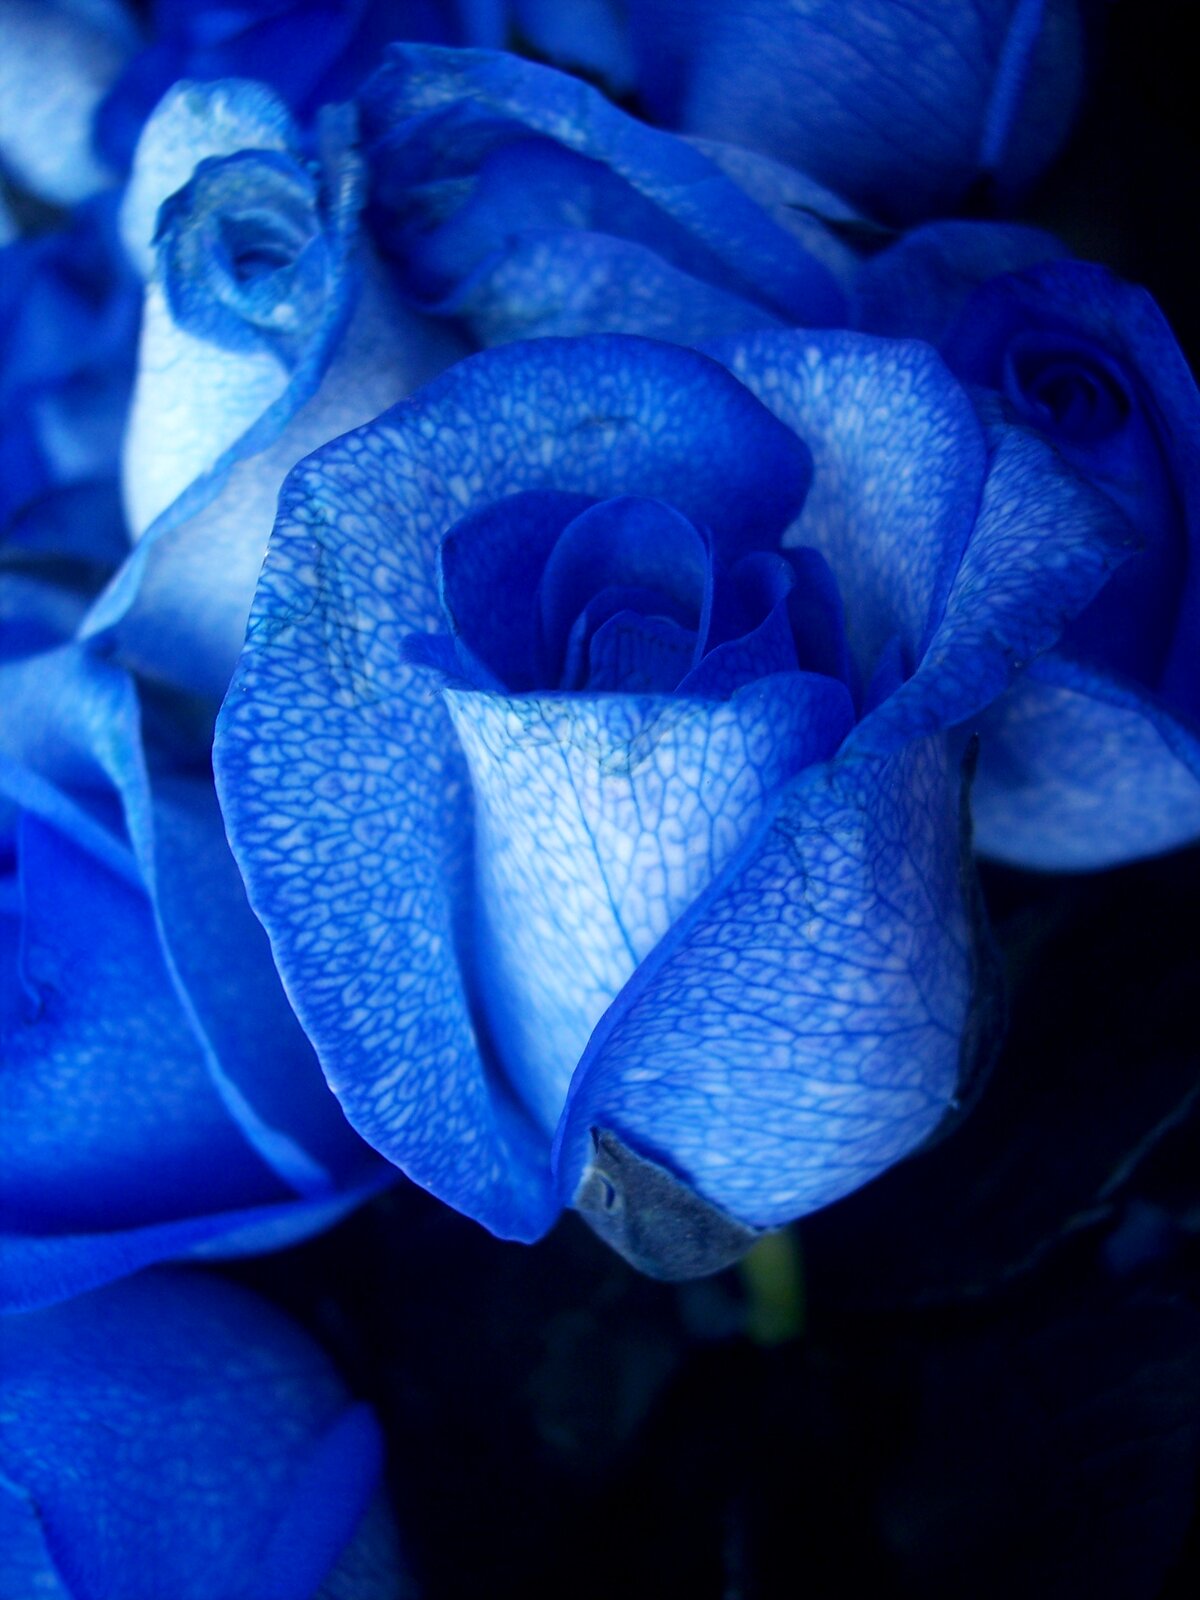 Fotografia przedstawia zbliżenie kilku kwiatów róży o intensywnie niebieskim kolorze. Do jej komórek wprowadzono gen odpowiedzialny za produkcję substancji, nadającej płatkom niebieską barwę.